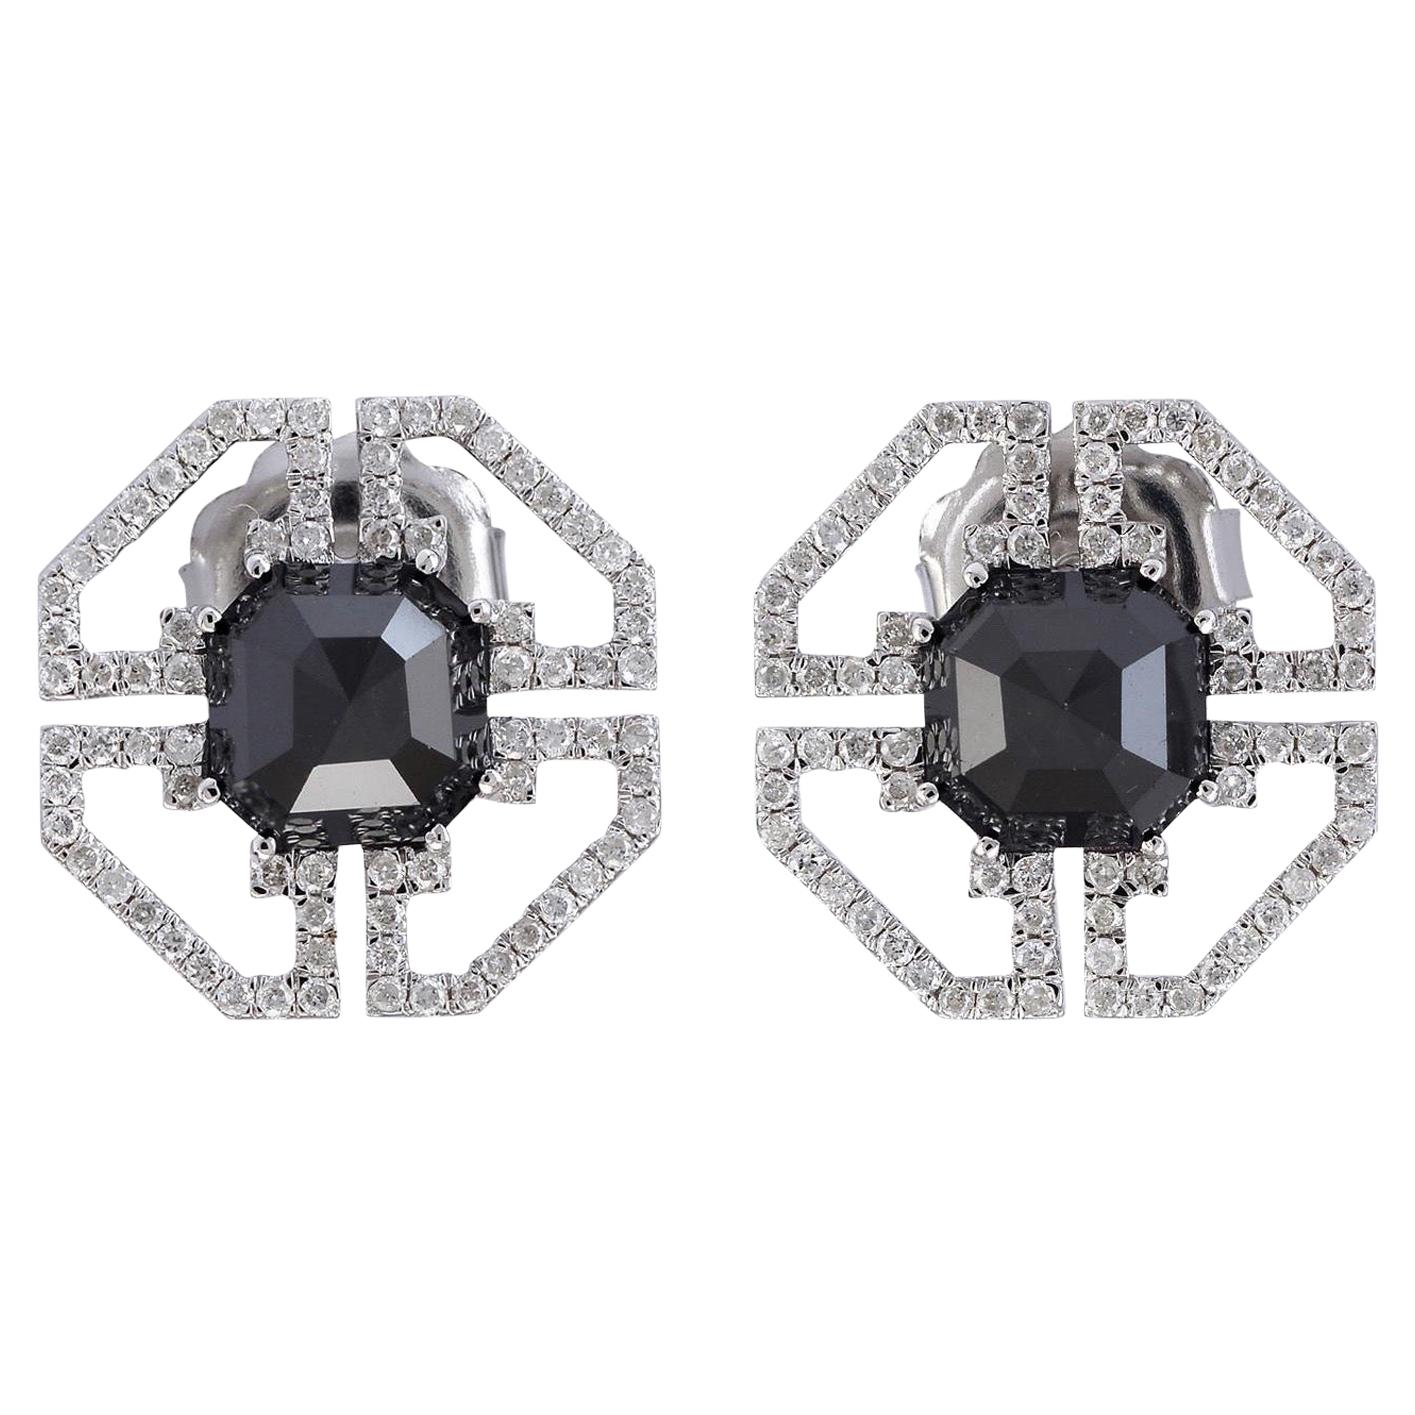 Fancy Diamond 18 Karat Gold Stud Earrings For Sale